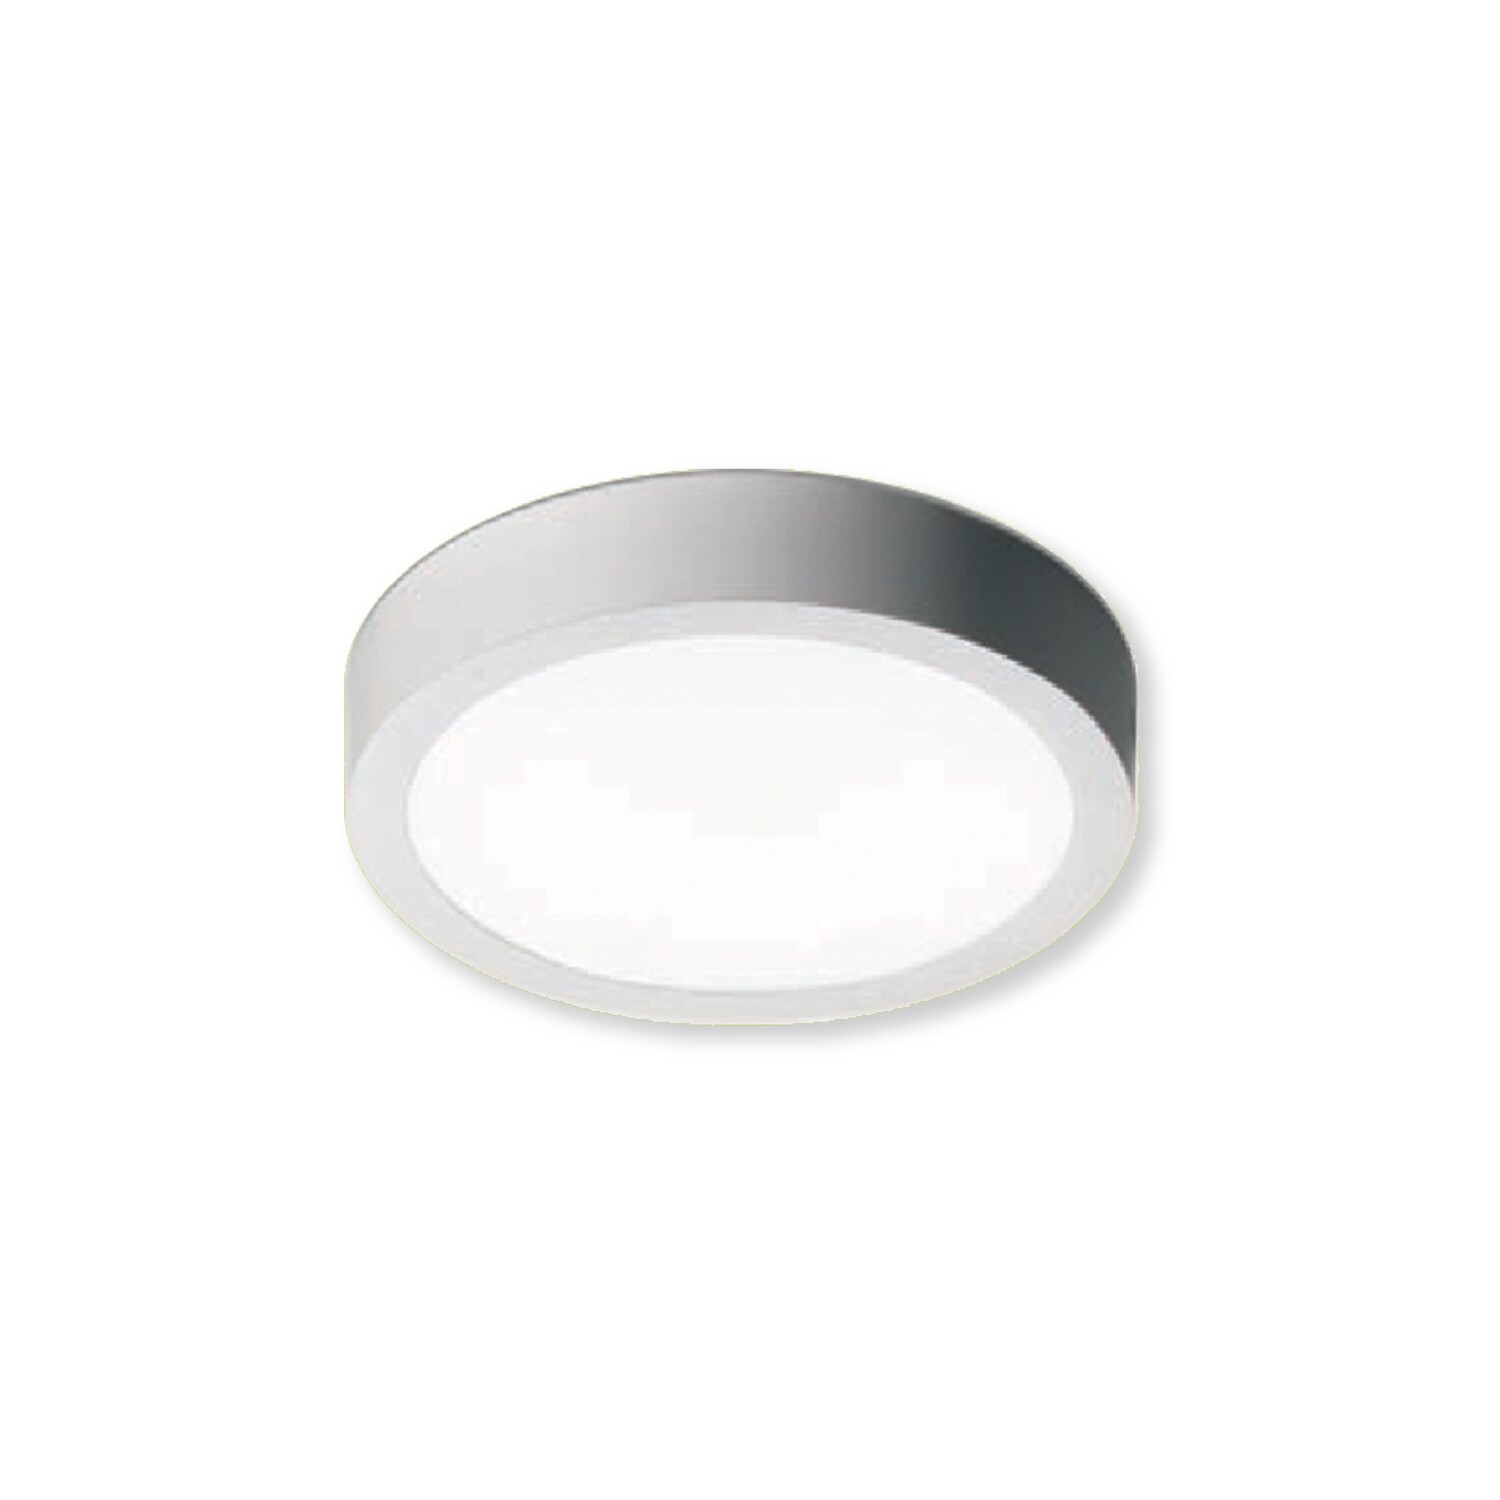 Lampara LED de sobreponer en caja metálica modelo POK estilo redonda en color gris de 4" con luz cálida